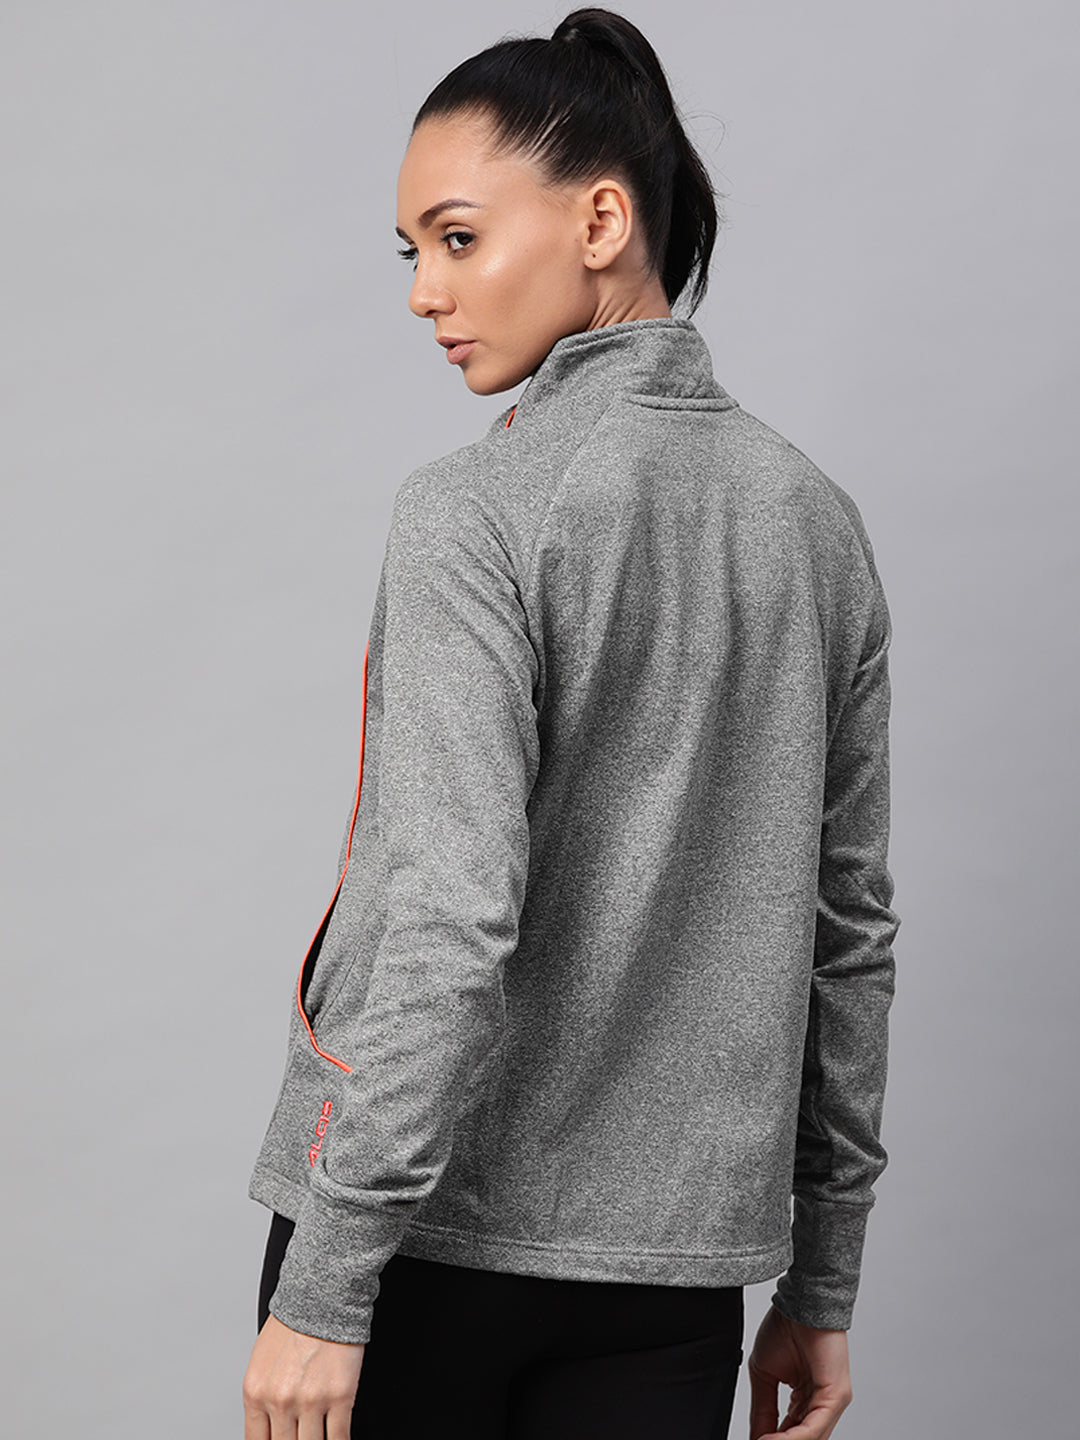 Alcis Women Grey Melange Solid Racquet Sports Sweatshirt